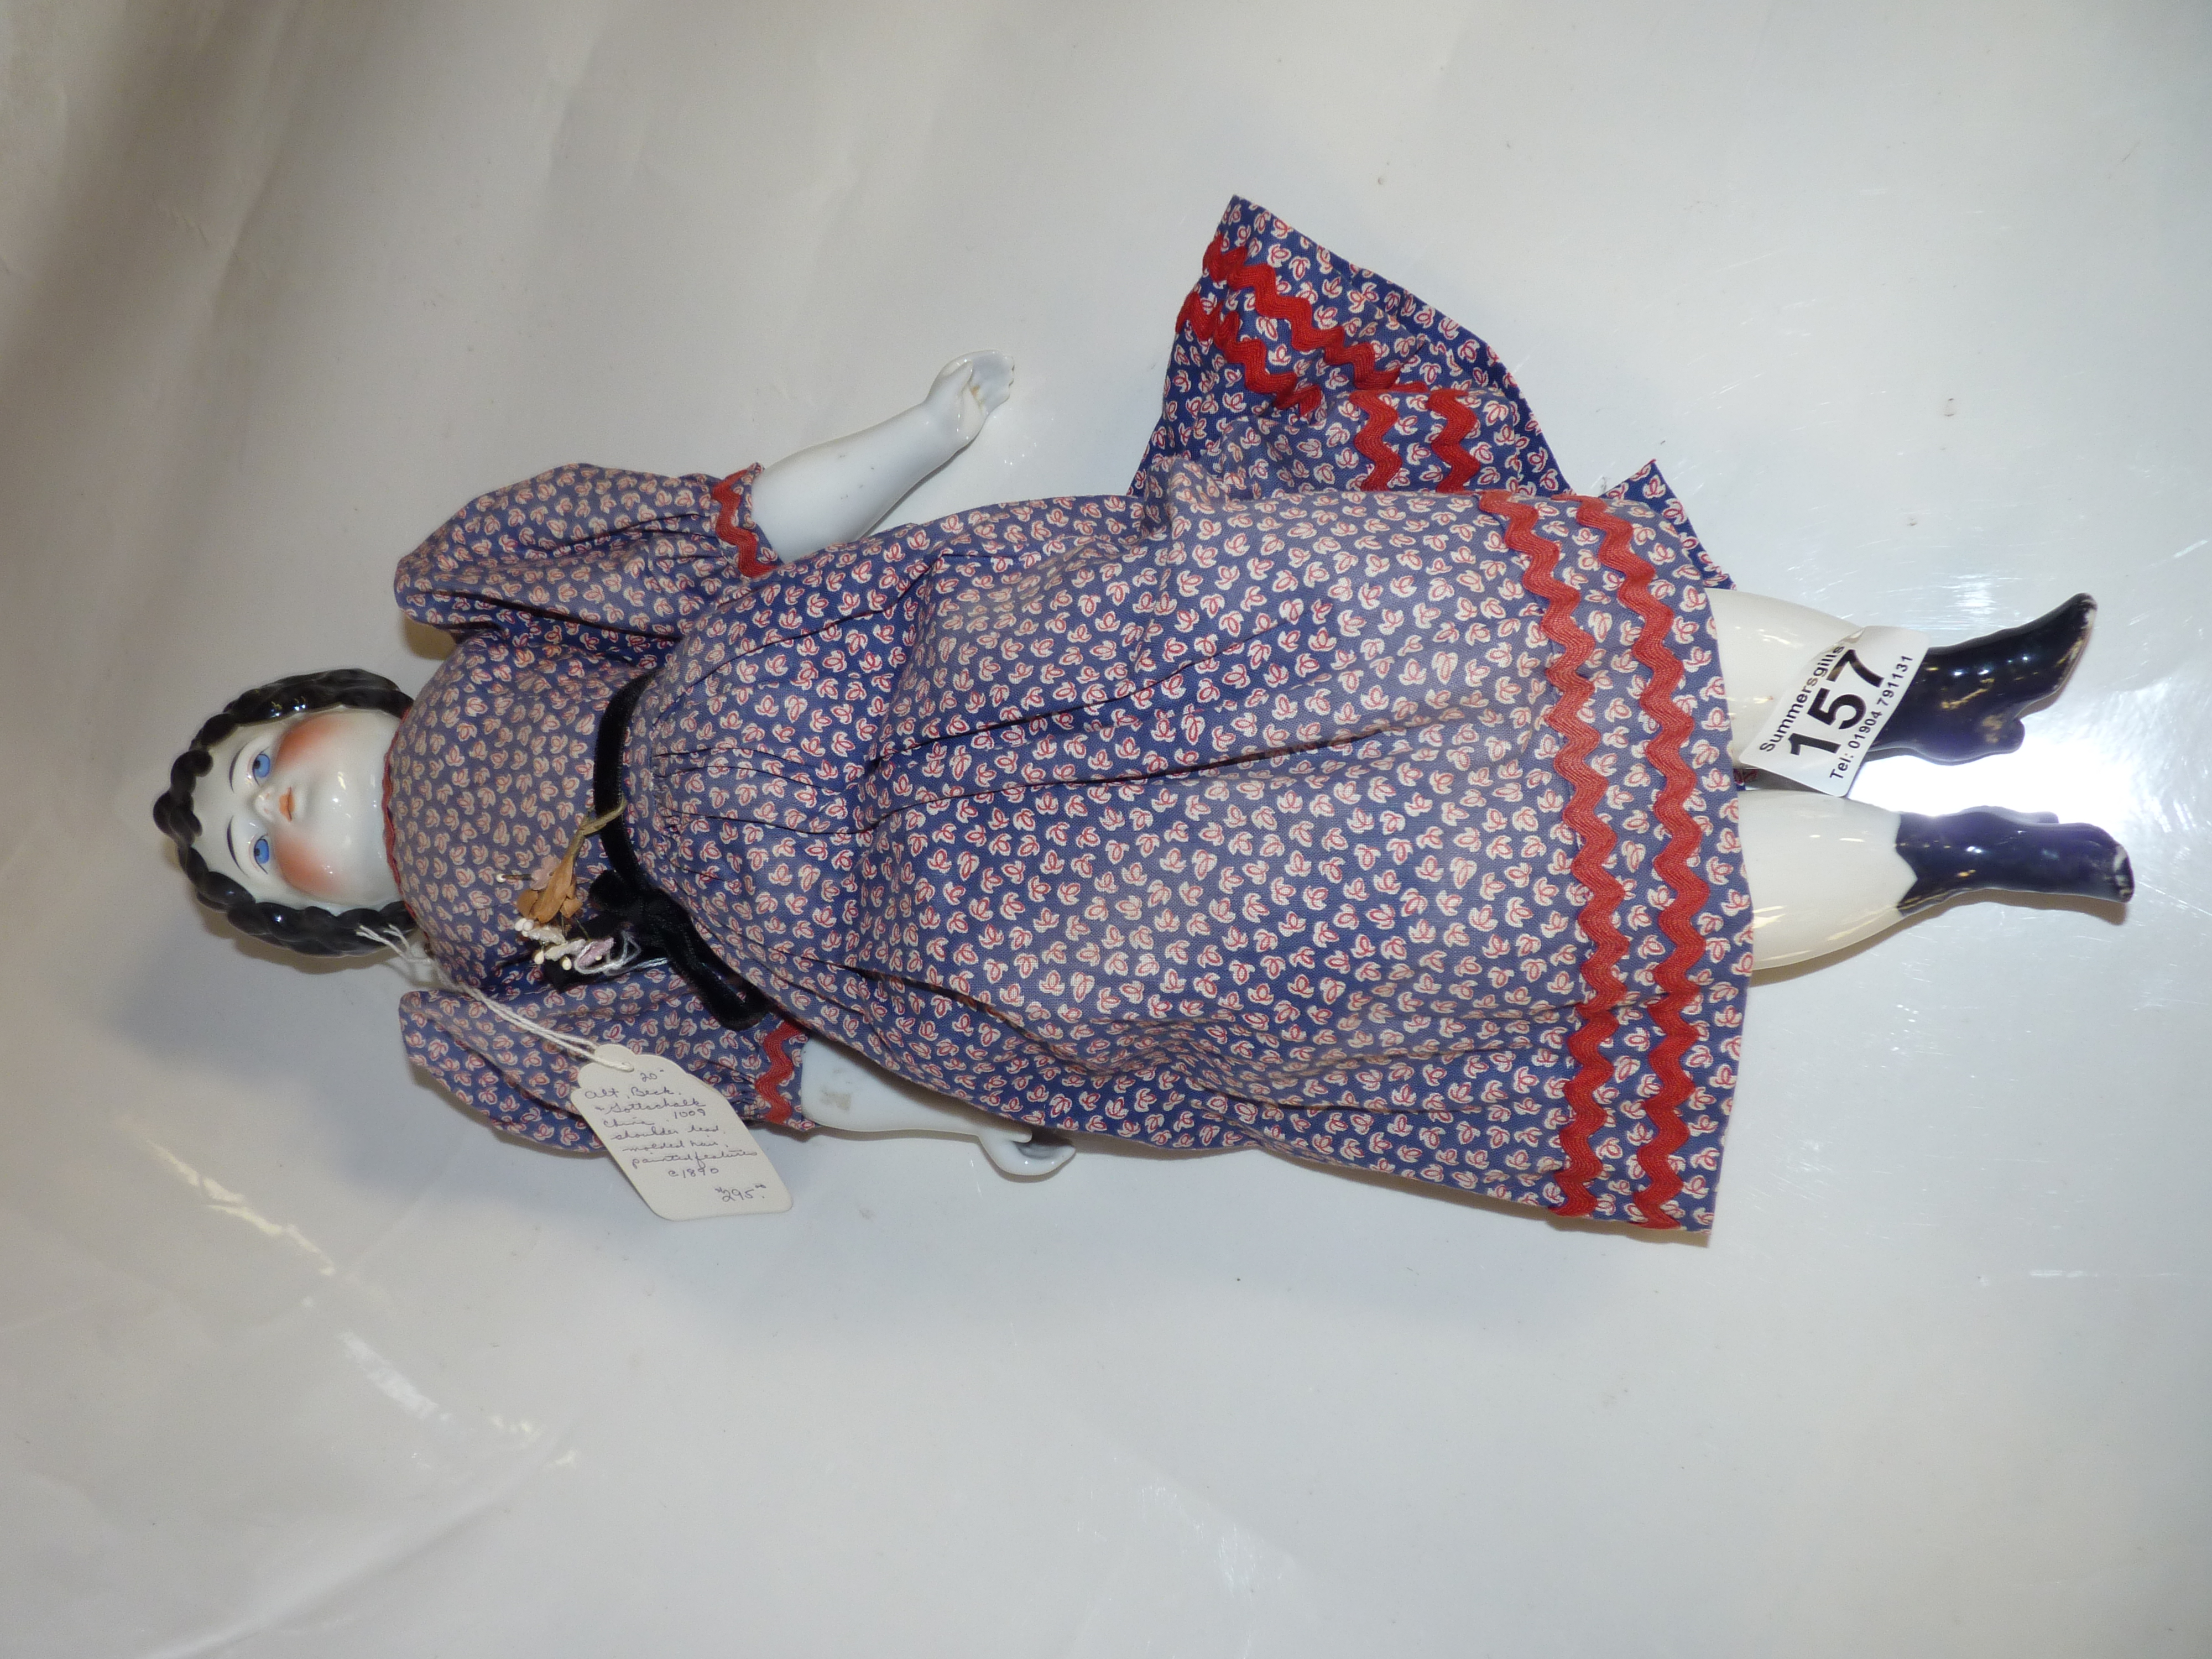 A 1890 china doll Alt Beck and Gottschalk 50cm ( ex. condition )